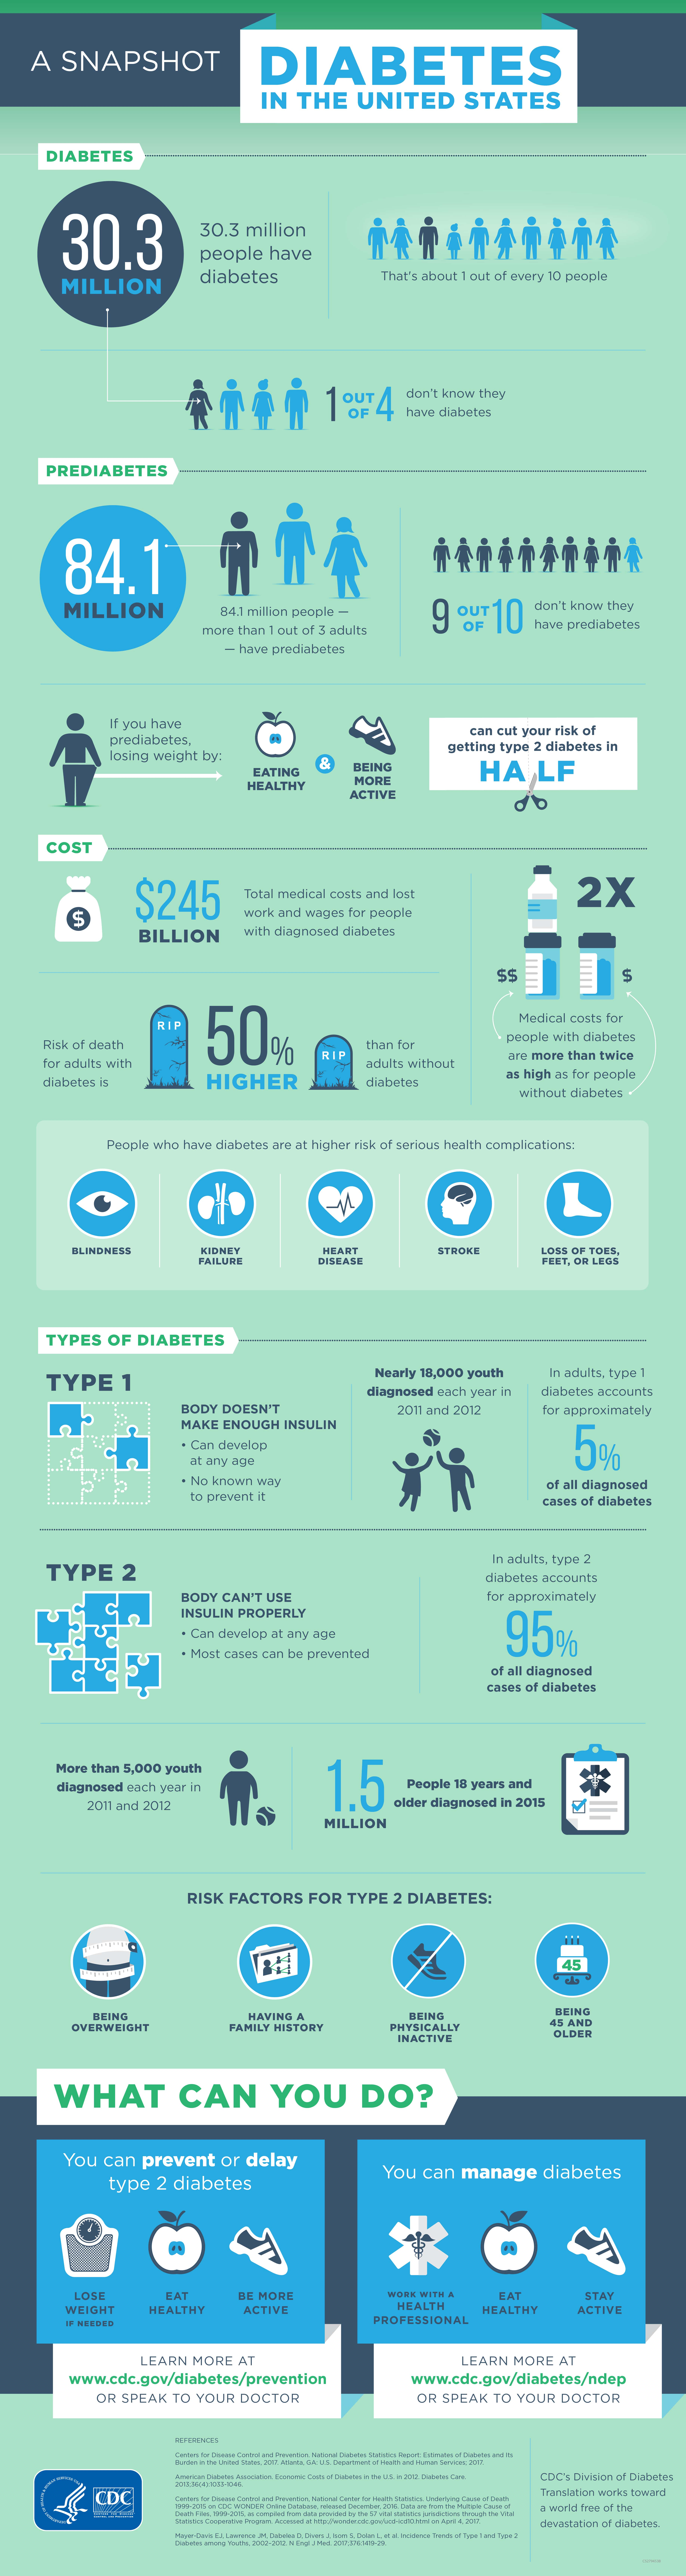 diabetes-infographic-cdc